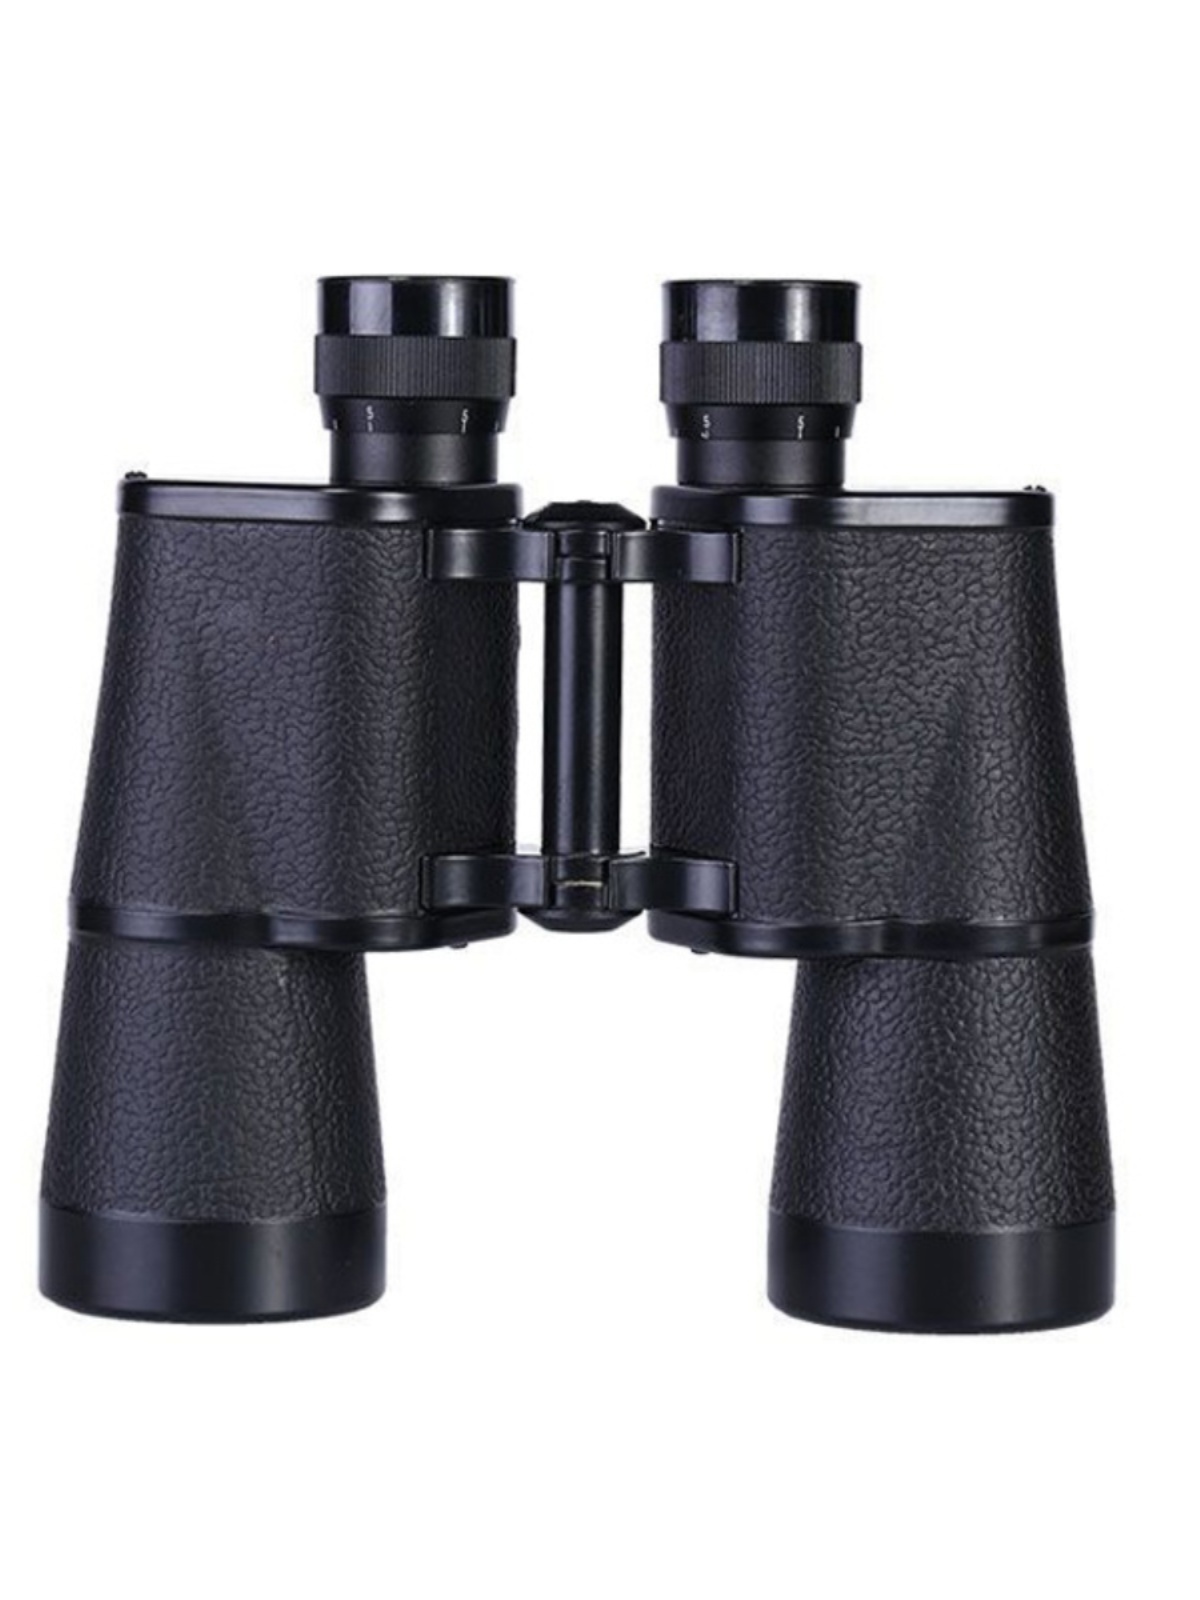 库63式15X50广角双筒望远镜 微光可视 坐标测距 高清高倍望远镜销